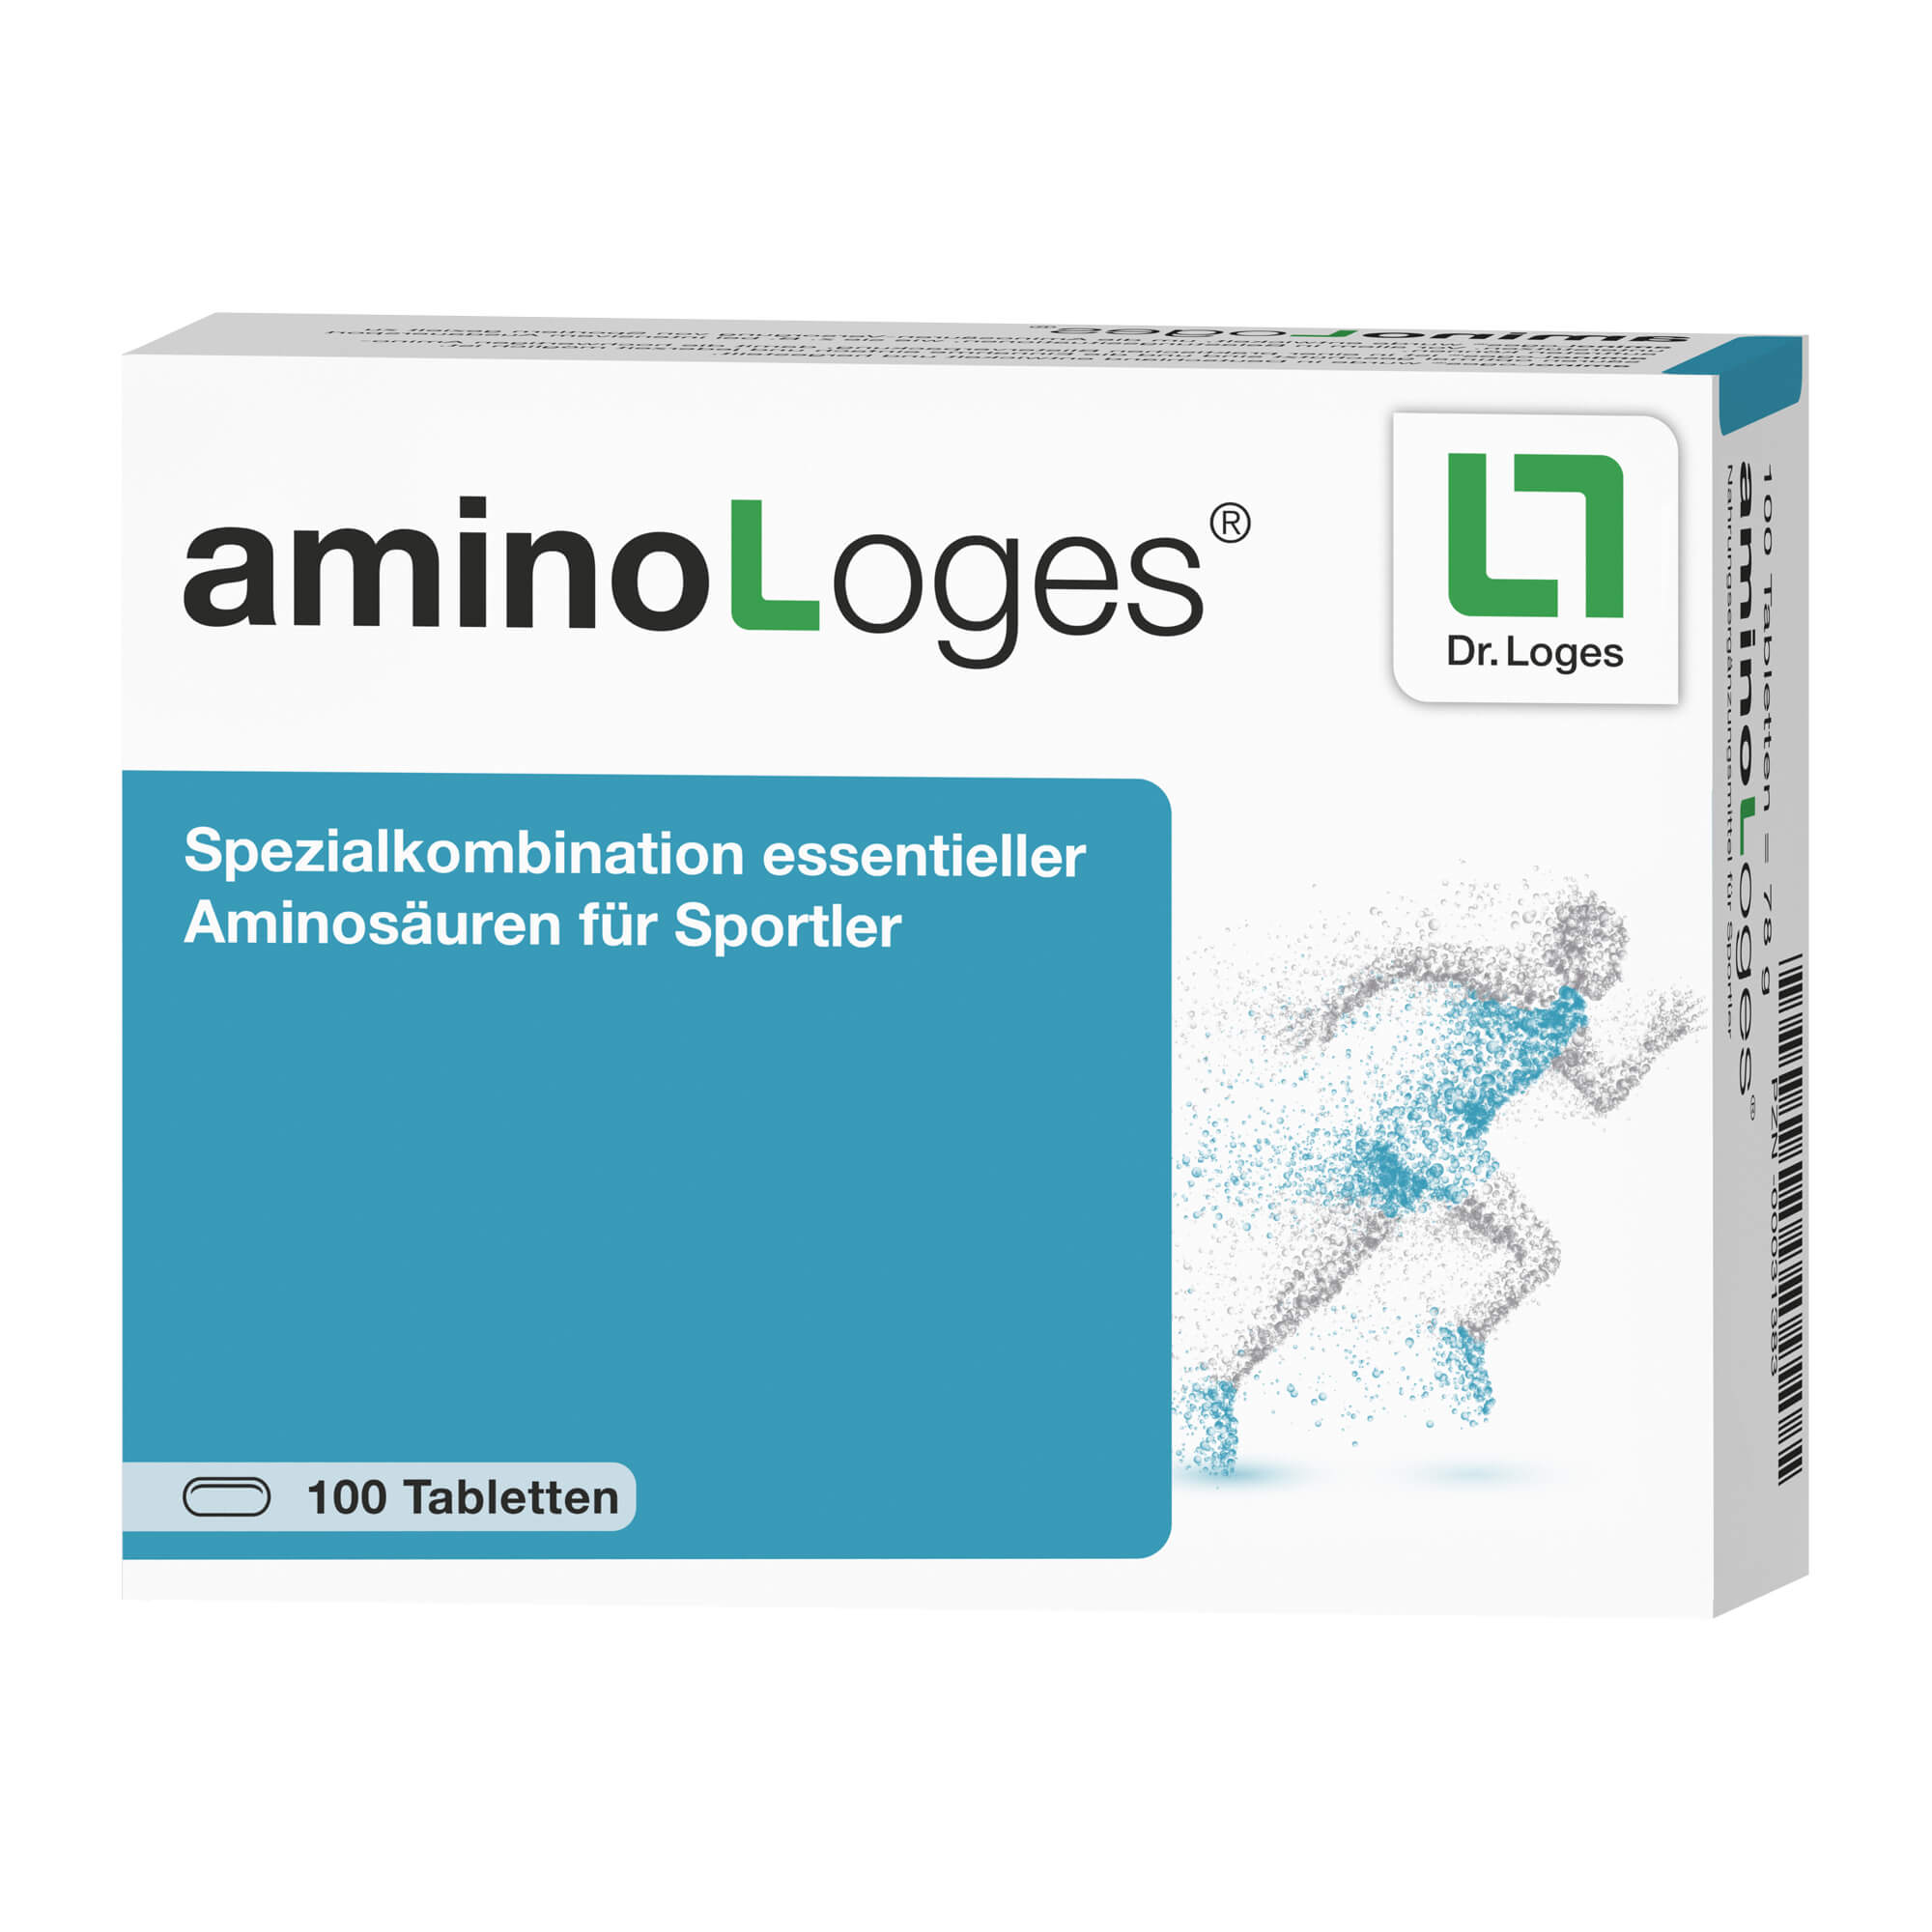 Spezialkombination essentieller und semiessentieller Aminosäuren für Sportler.